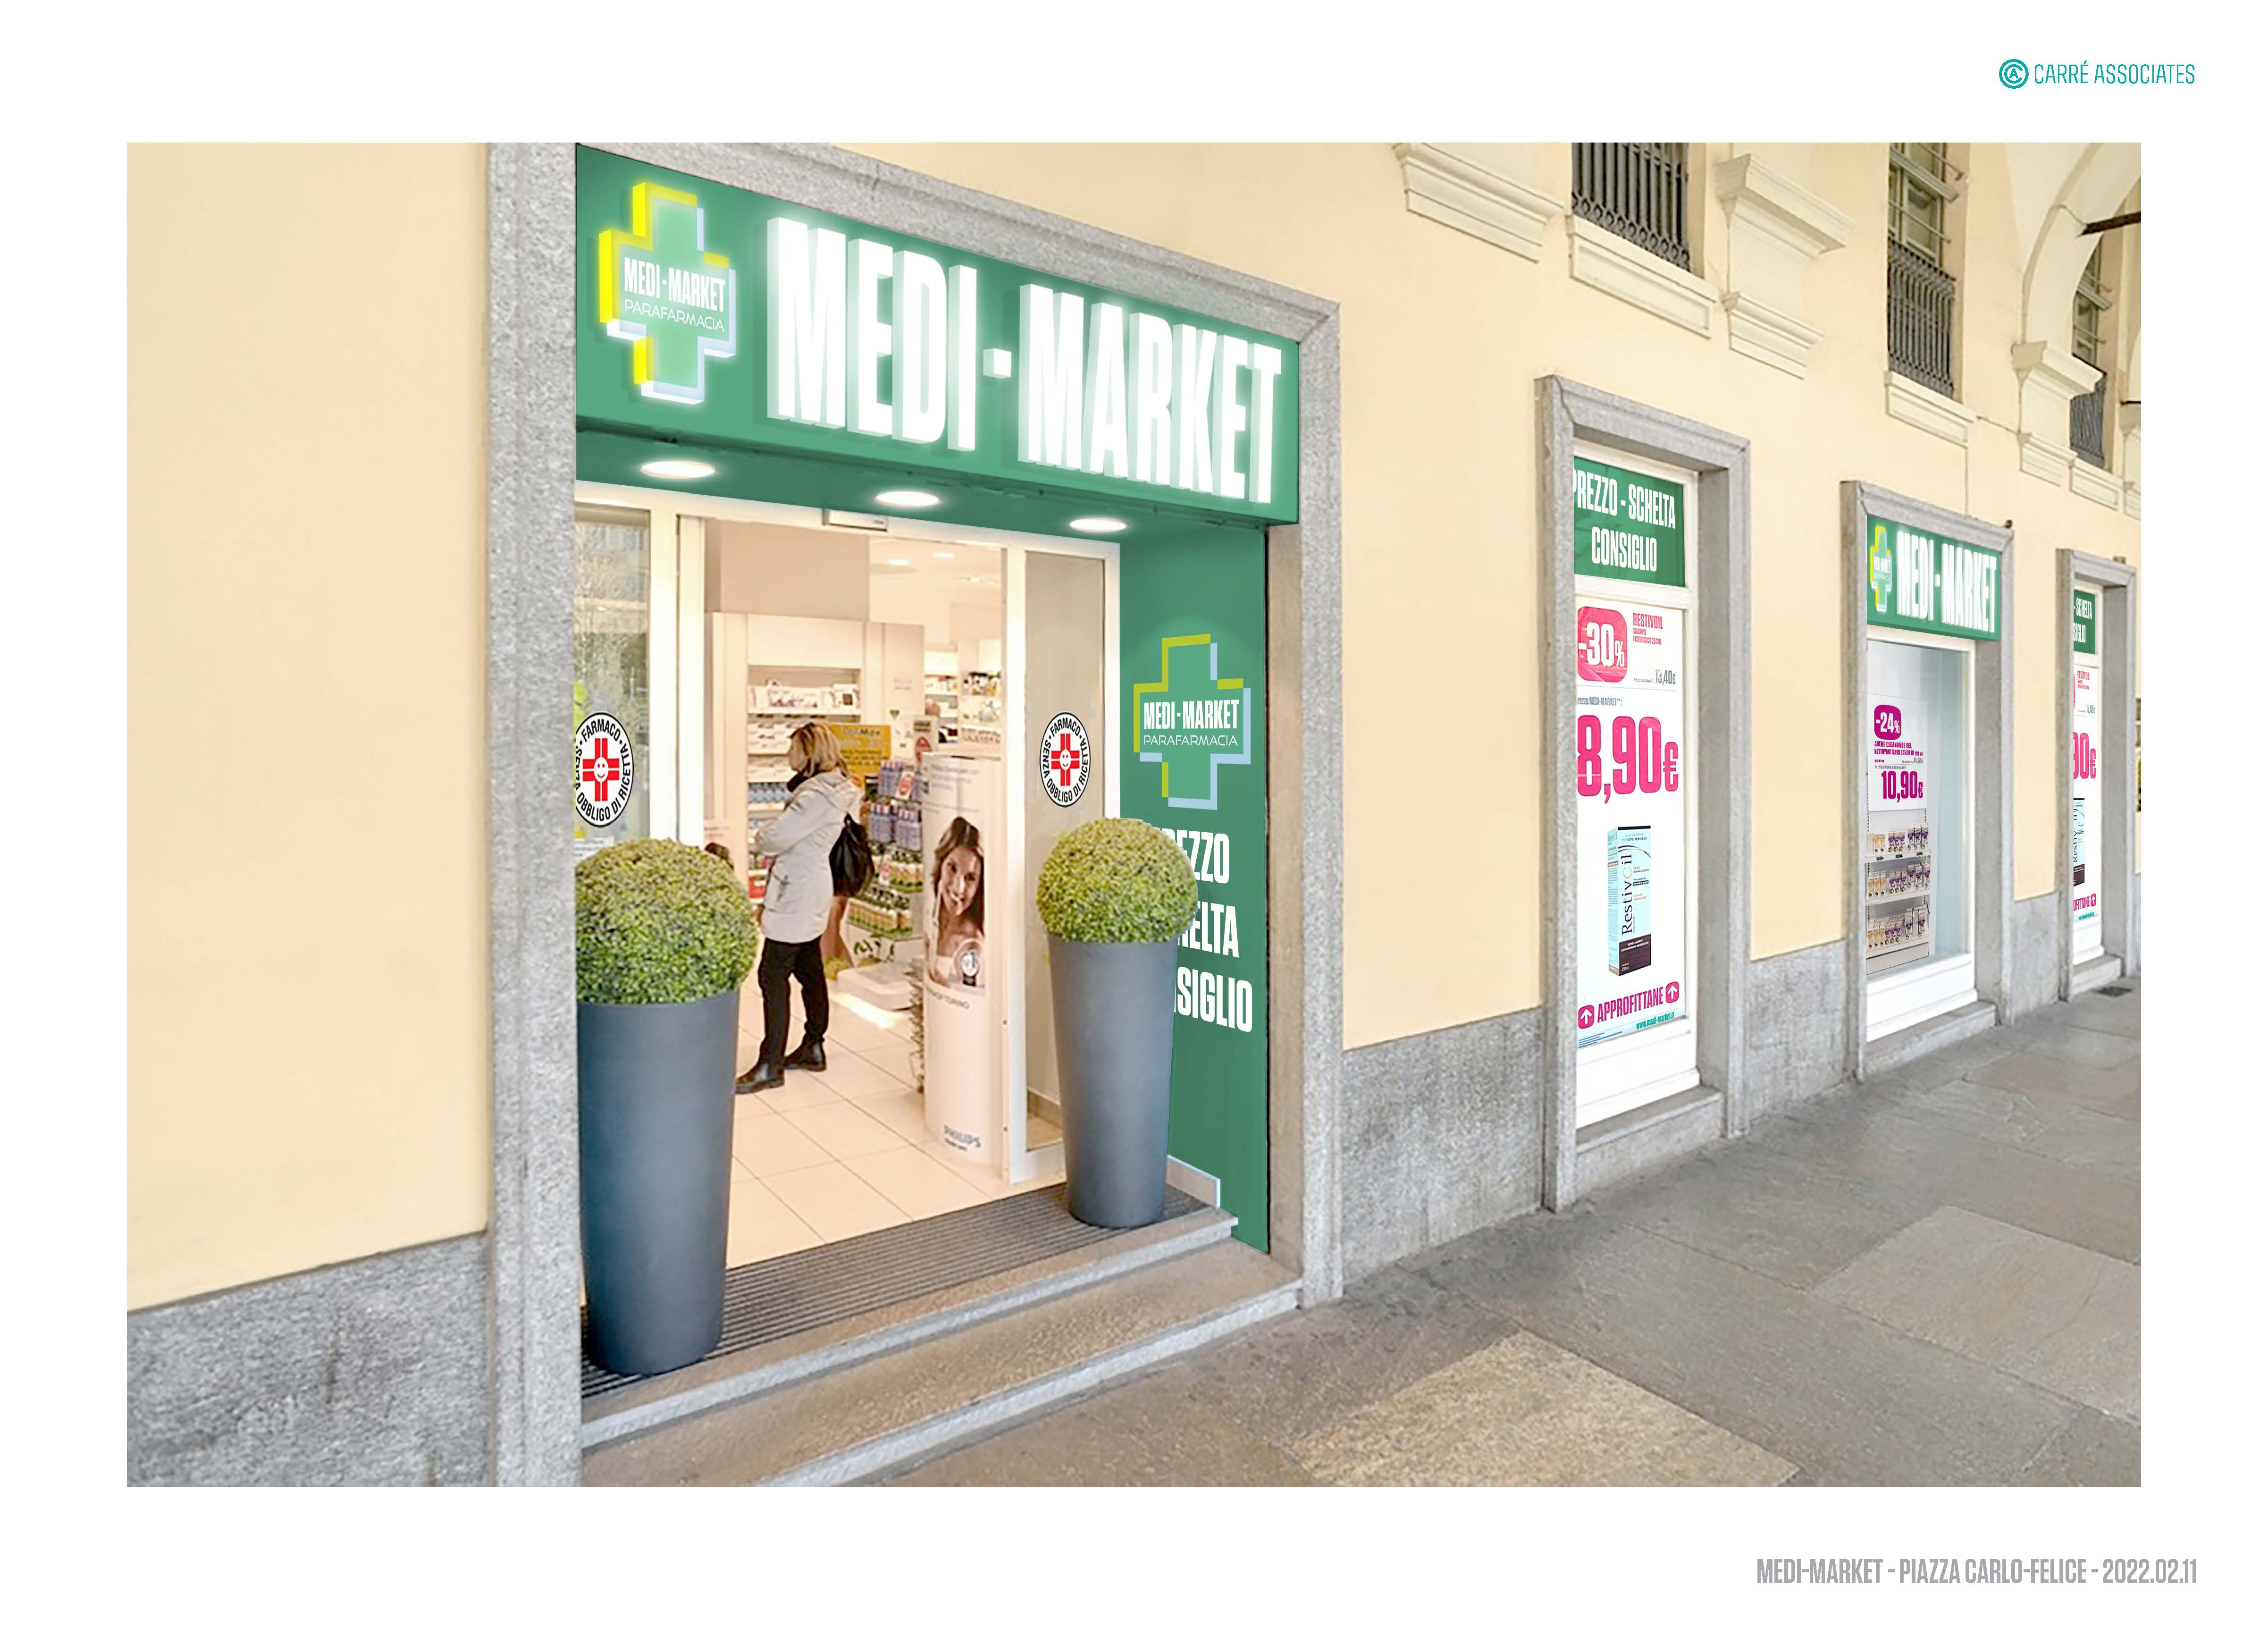 Lo storico punto vendita di Piazza Carlo Felice riapre il 3 maggio ad insegna Medi-Market,  con una bella partnership con Il Museo del Cinema di Torino